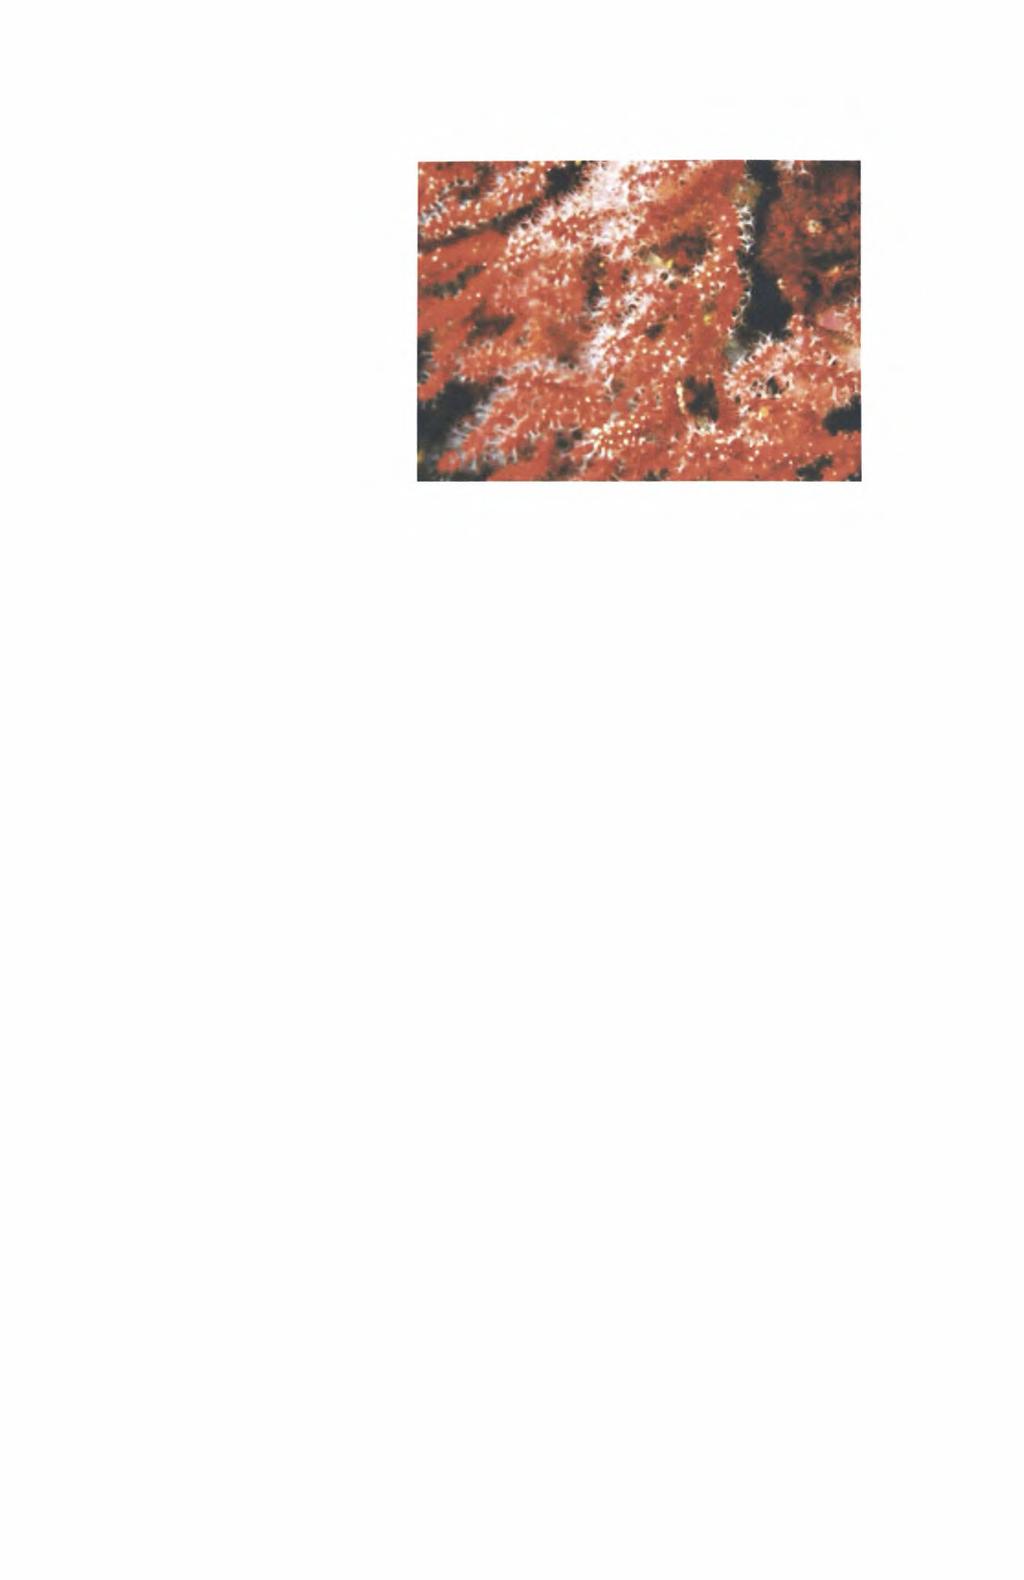 11 Πιο συγκεκριμένα, ως κοράλλι ορίζεται ένας πολύποδας (Εικ. 1) που ζει μόνος ή σε αποικίες και καλύπτεται από μαλακό ή σκληρό εξωσκελετο διατηρώντας όμως τη γενική του δομή απλή.